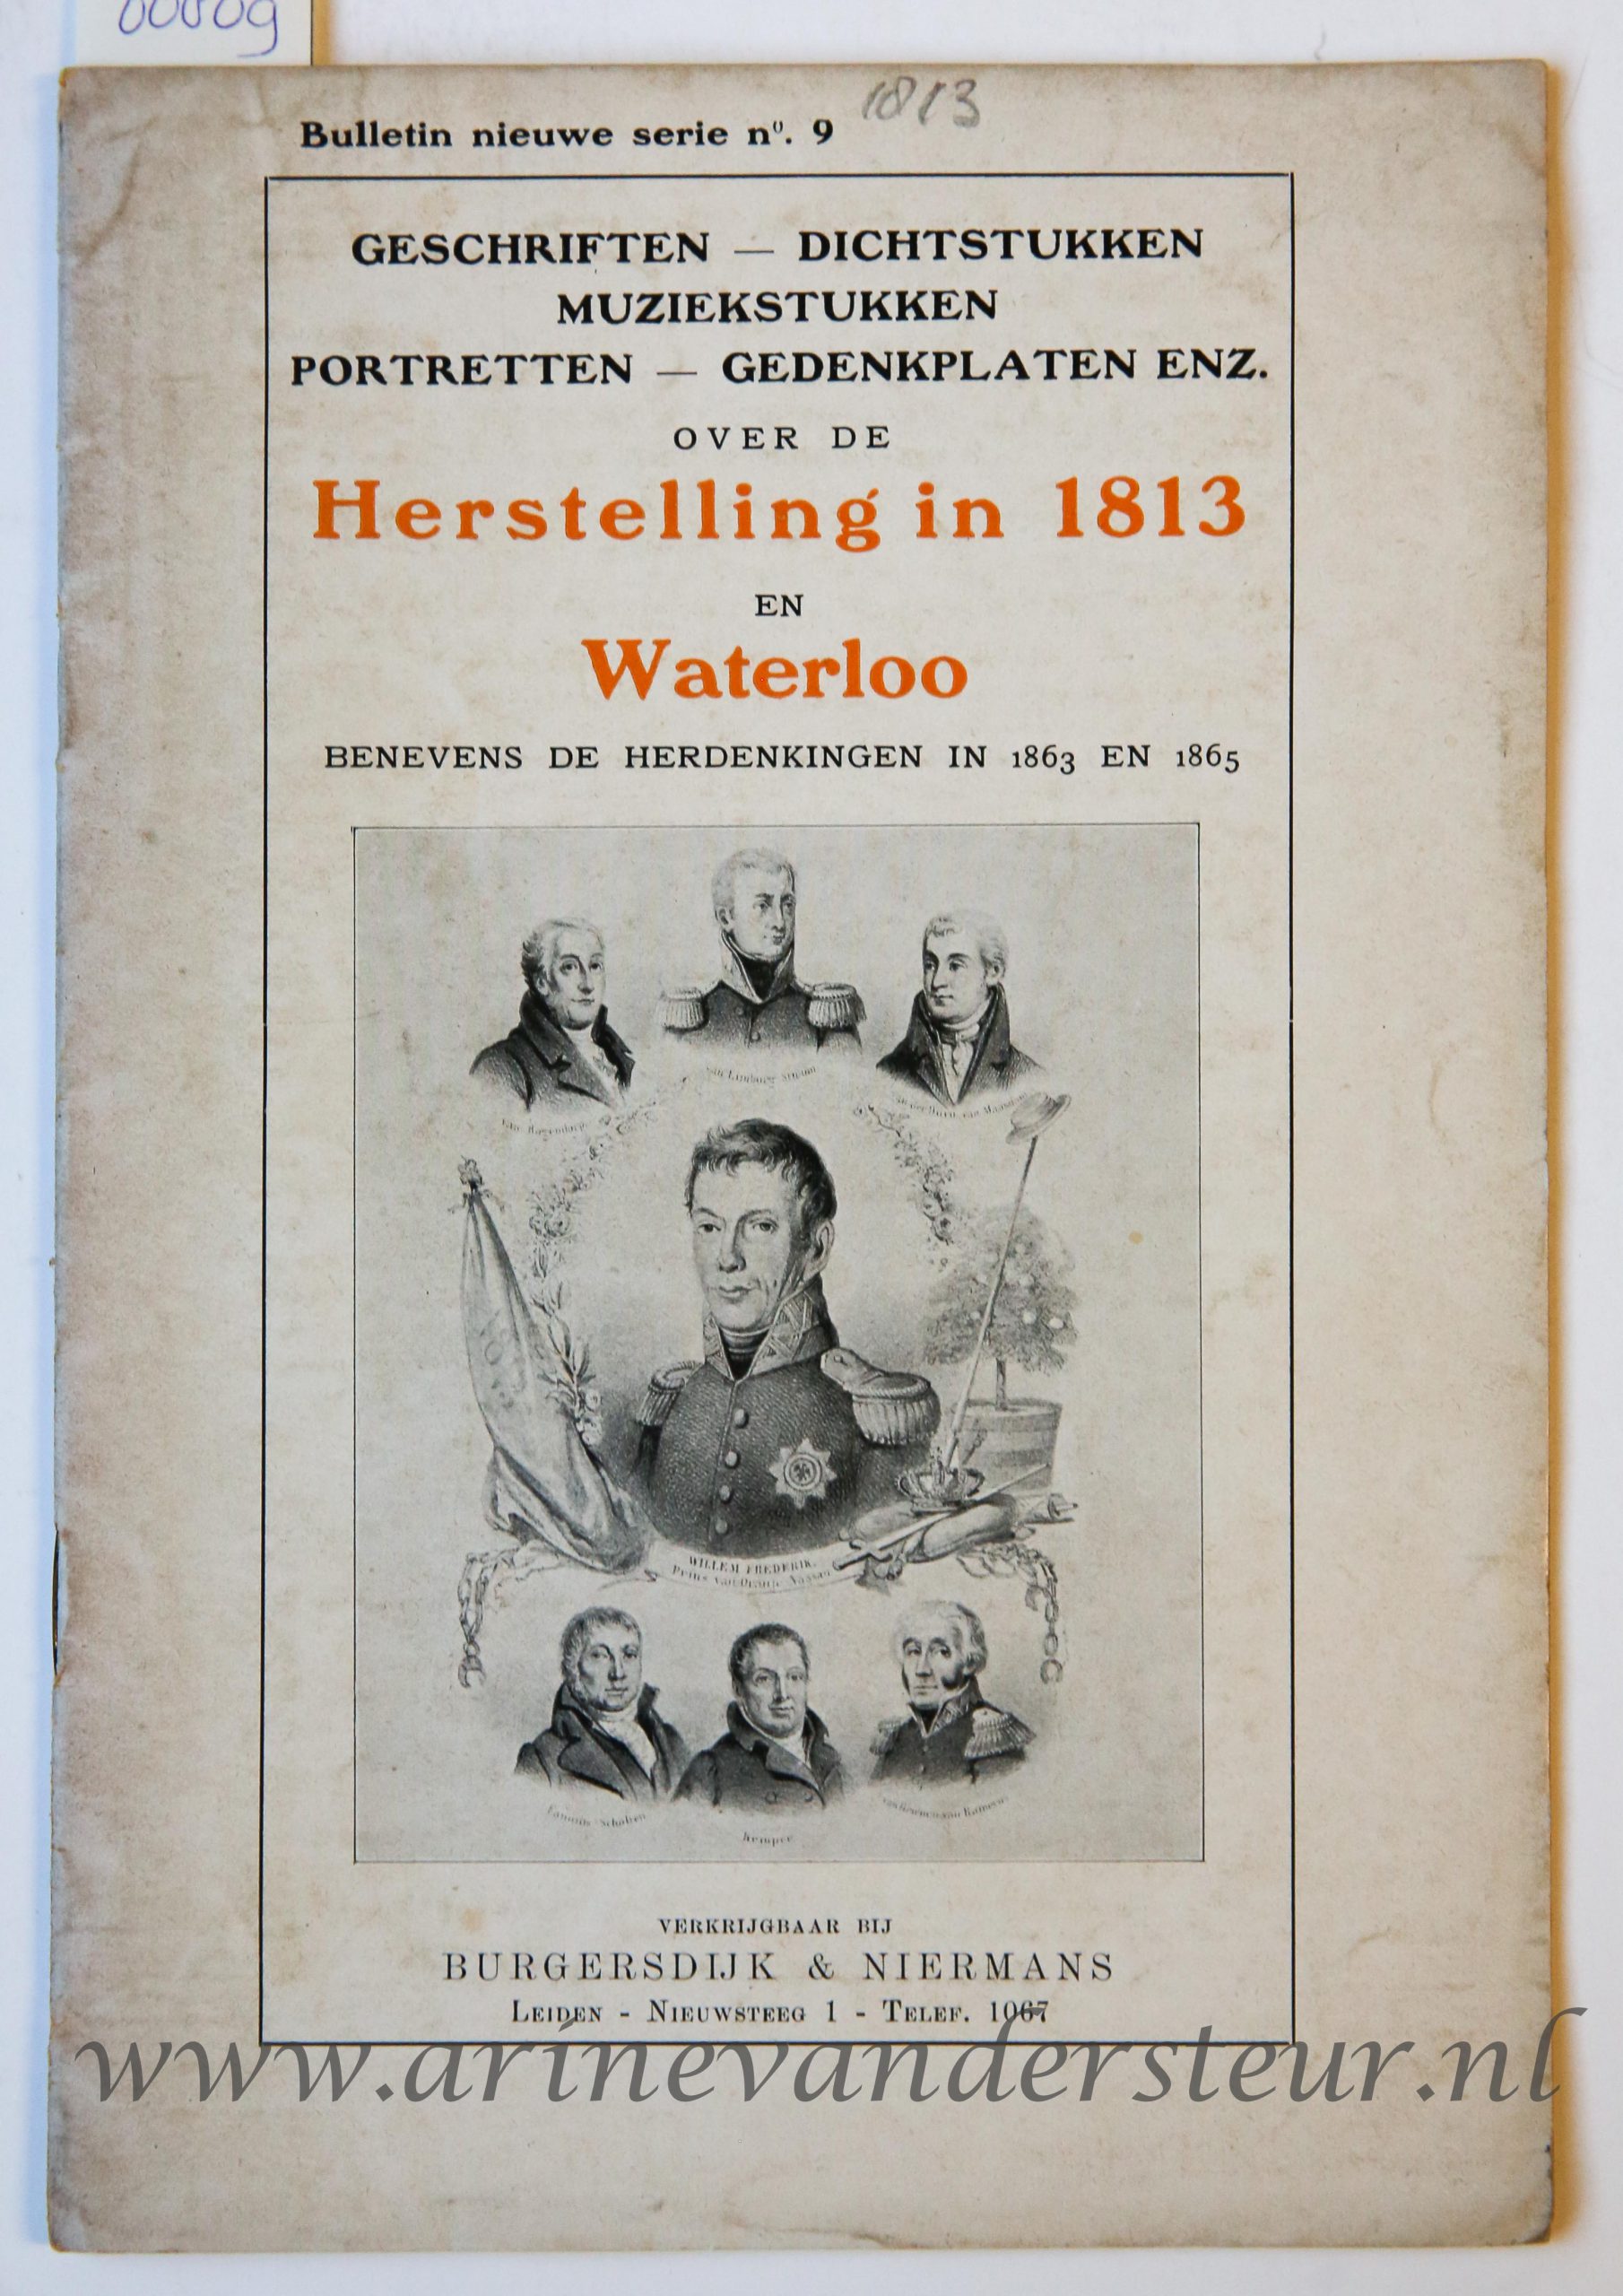 Burgersdijk & Niermans Bulletin nieuwe serie no 9 1813, Geschriften - dichtstukken muziekstukken portretten gedenkplaten enz. over de Herstelling in 1813 en Waterloo benevens de herdenkingen in 1863 en 1865, verkrijgbaar bij Burgersdijk & Niermans, Leiden, zonder jaar, 32 pp.